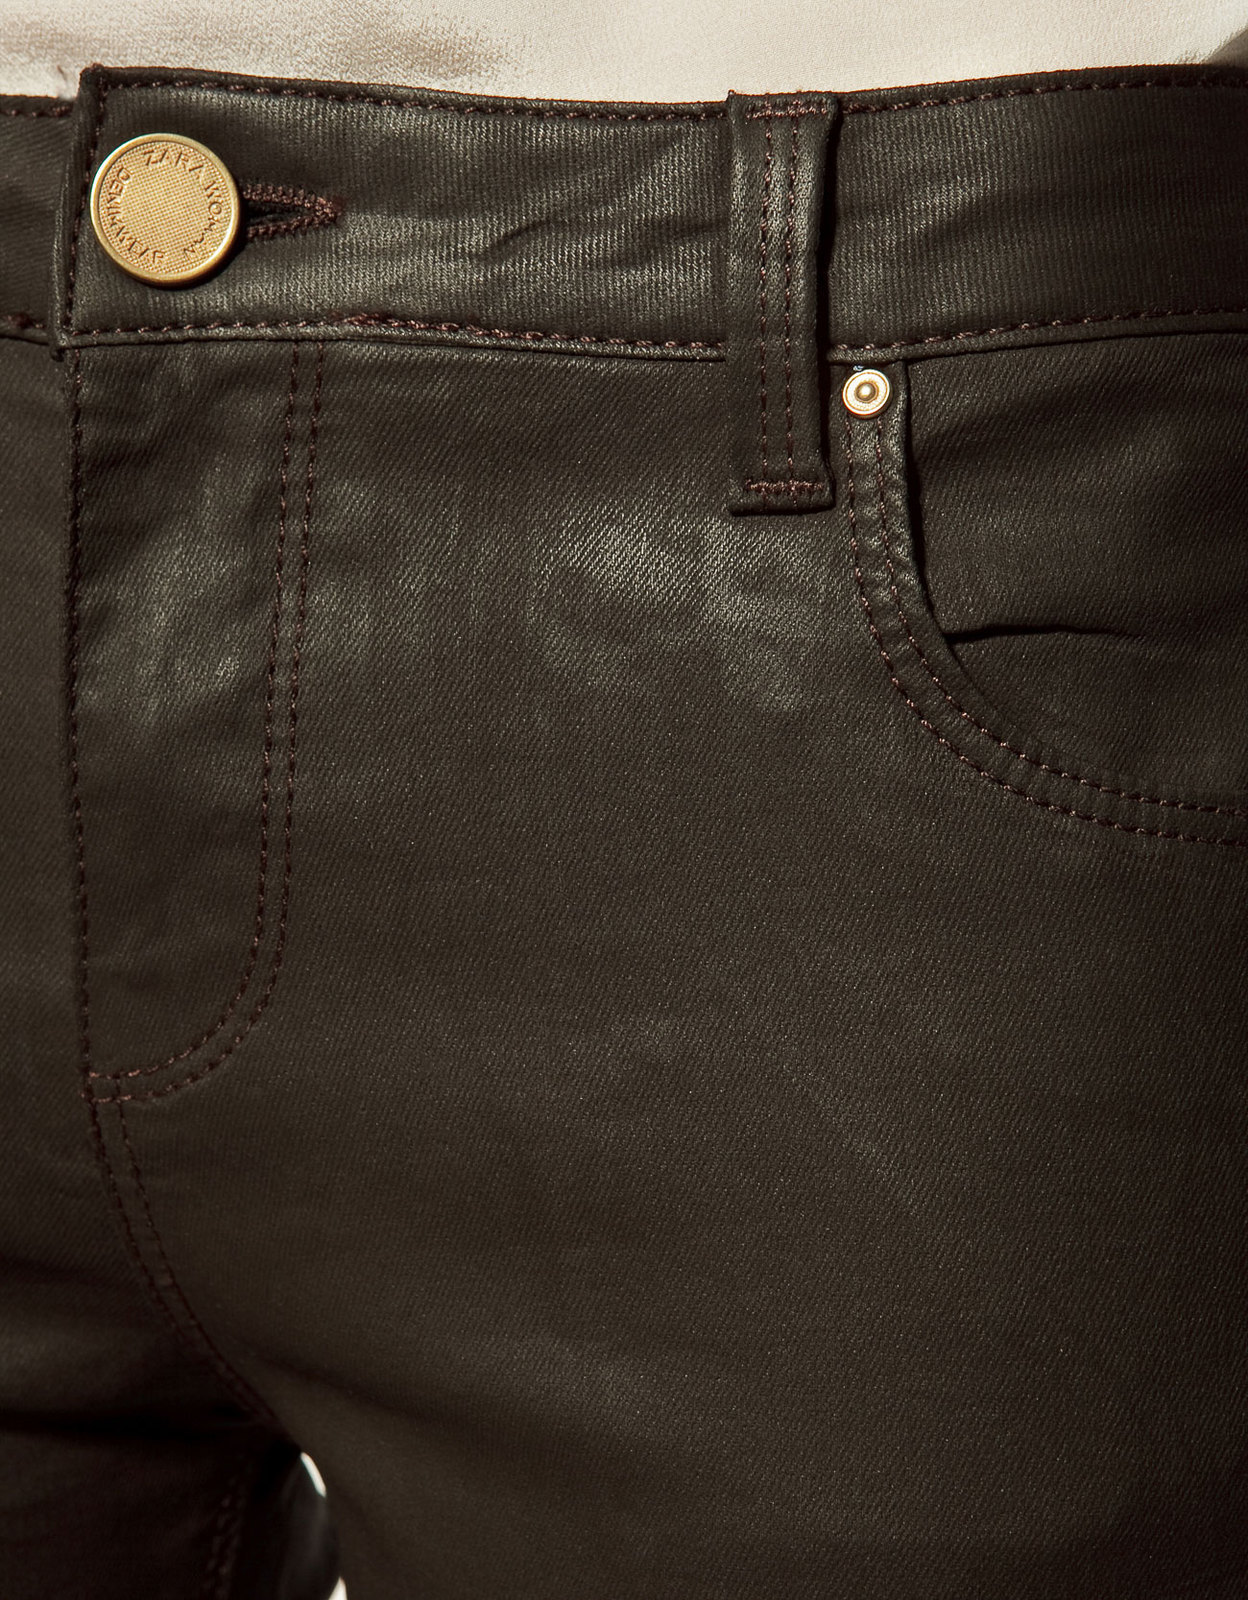 Zara lakk hatású nadrág 2012.2.10 fotója